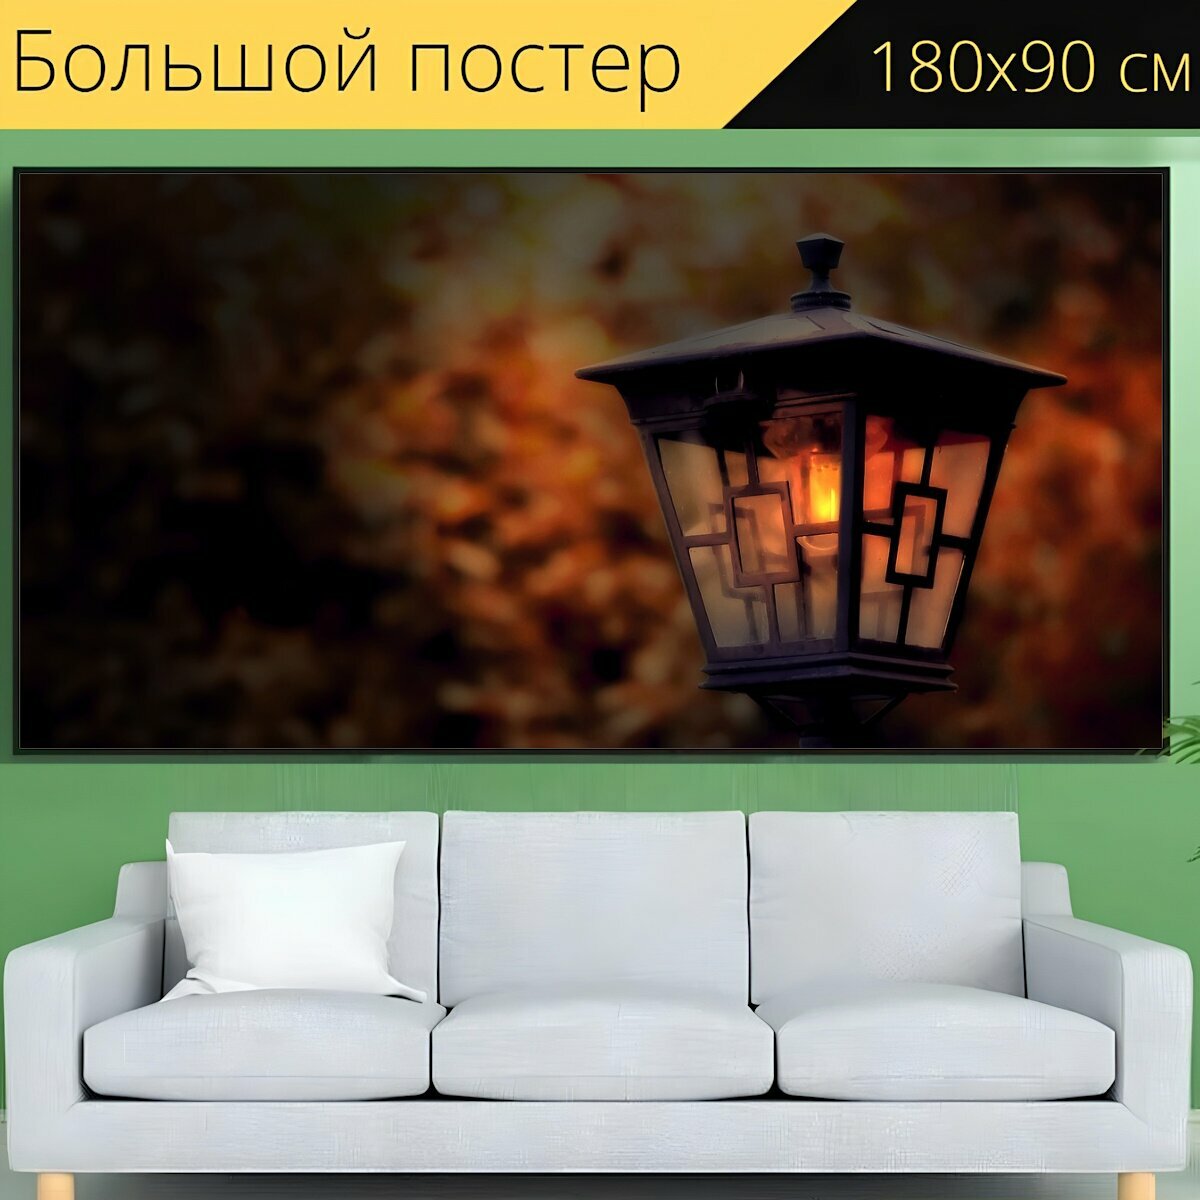 Большой постер "Напольная лампа, ночь, свет" 180 x 90 см. для интерьера